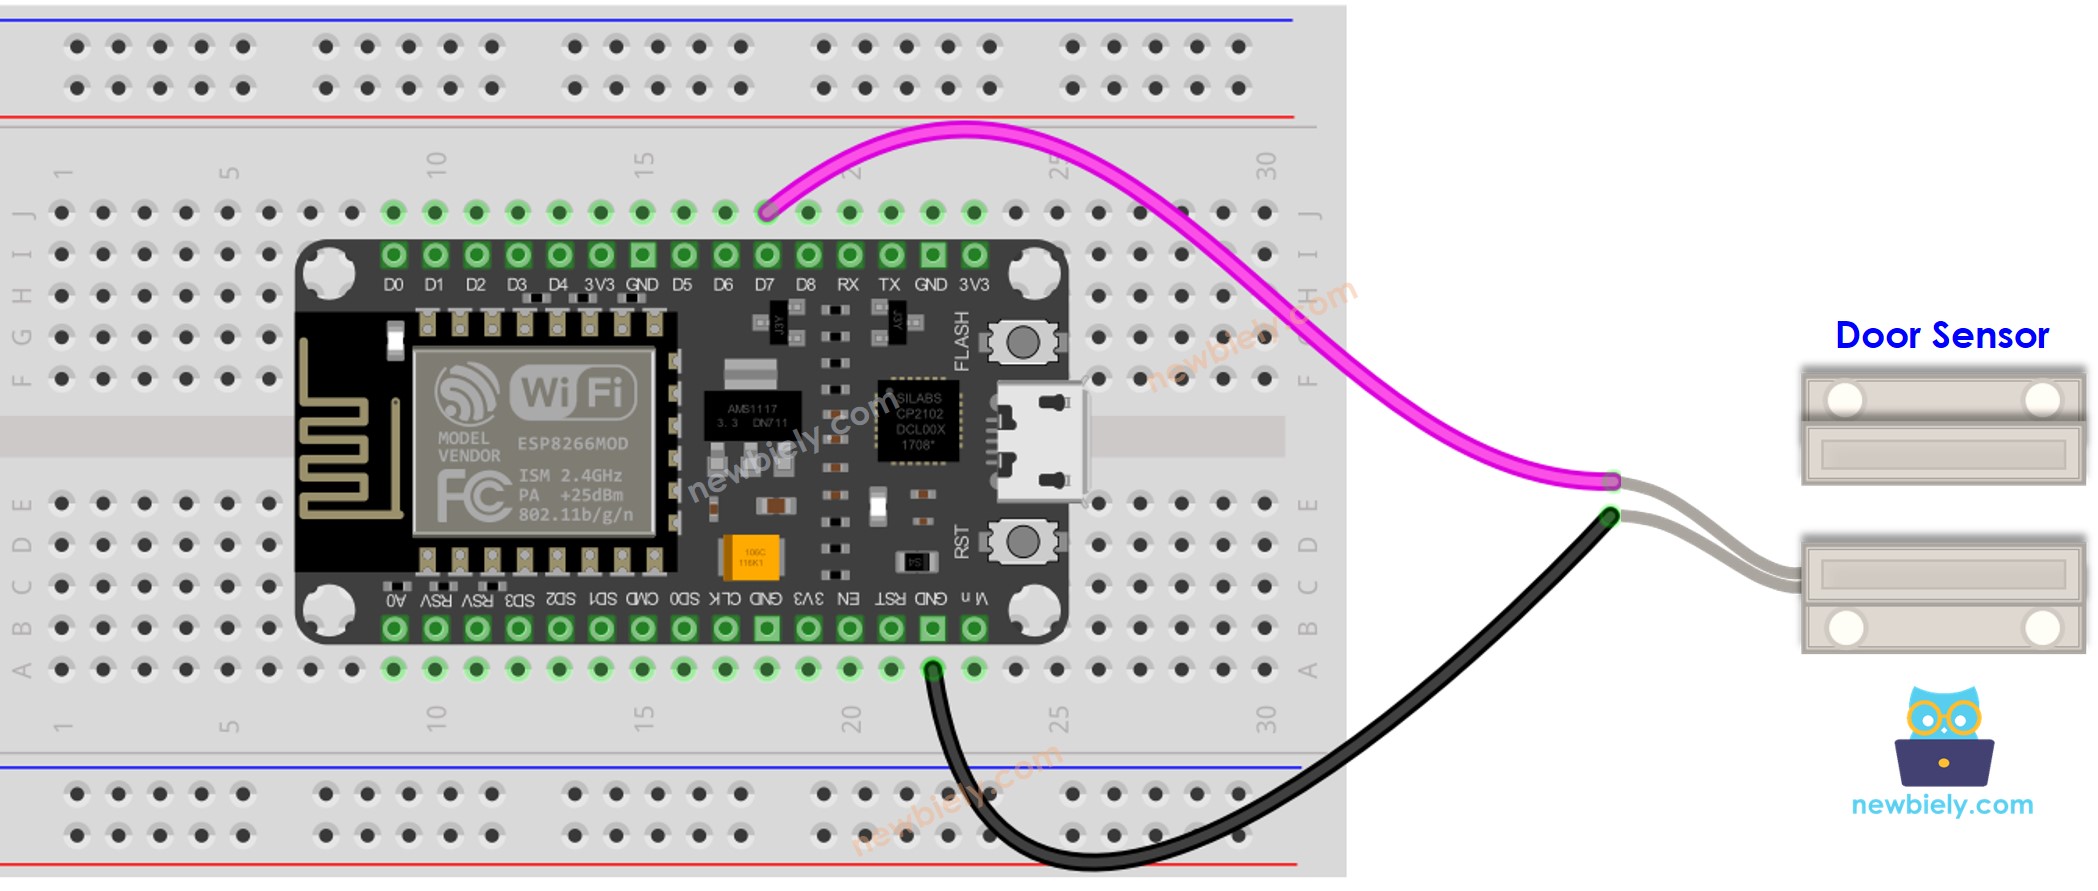 The wiring diagram between ESP8266 NodeMCU and Door Sensor